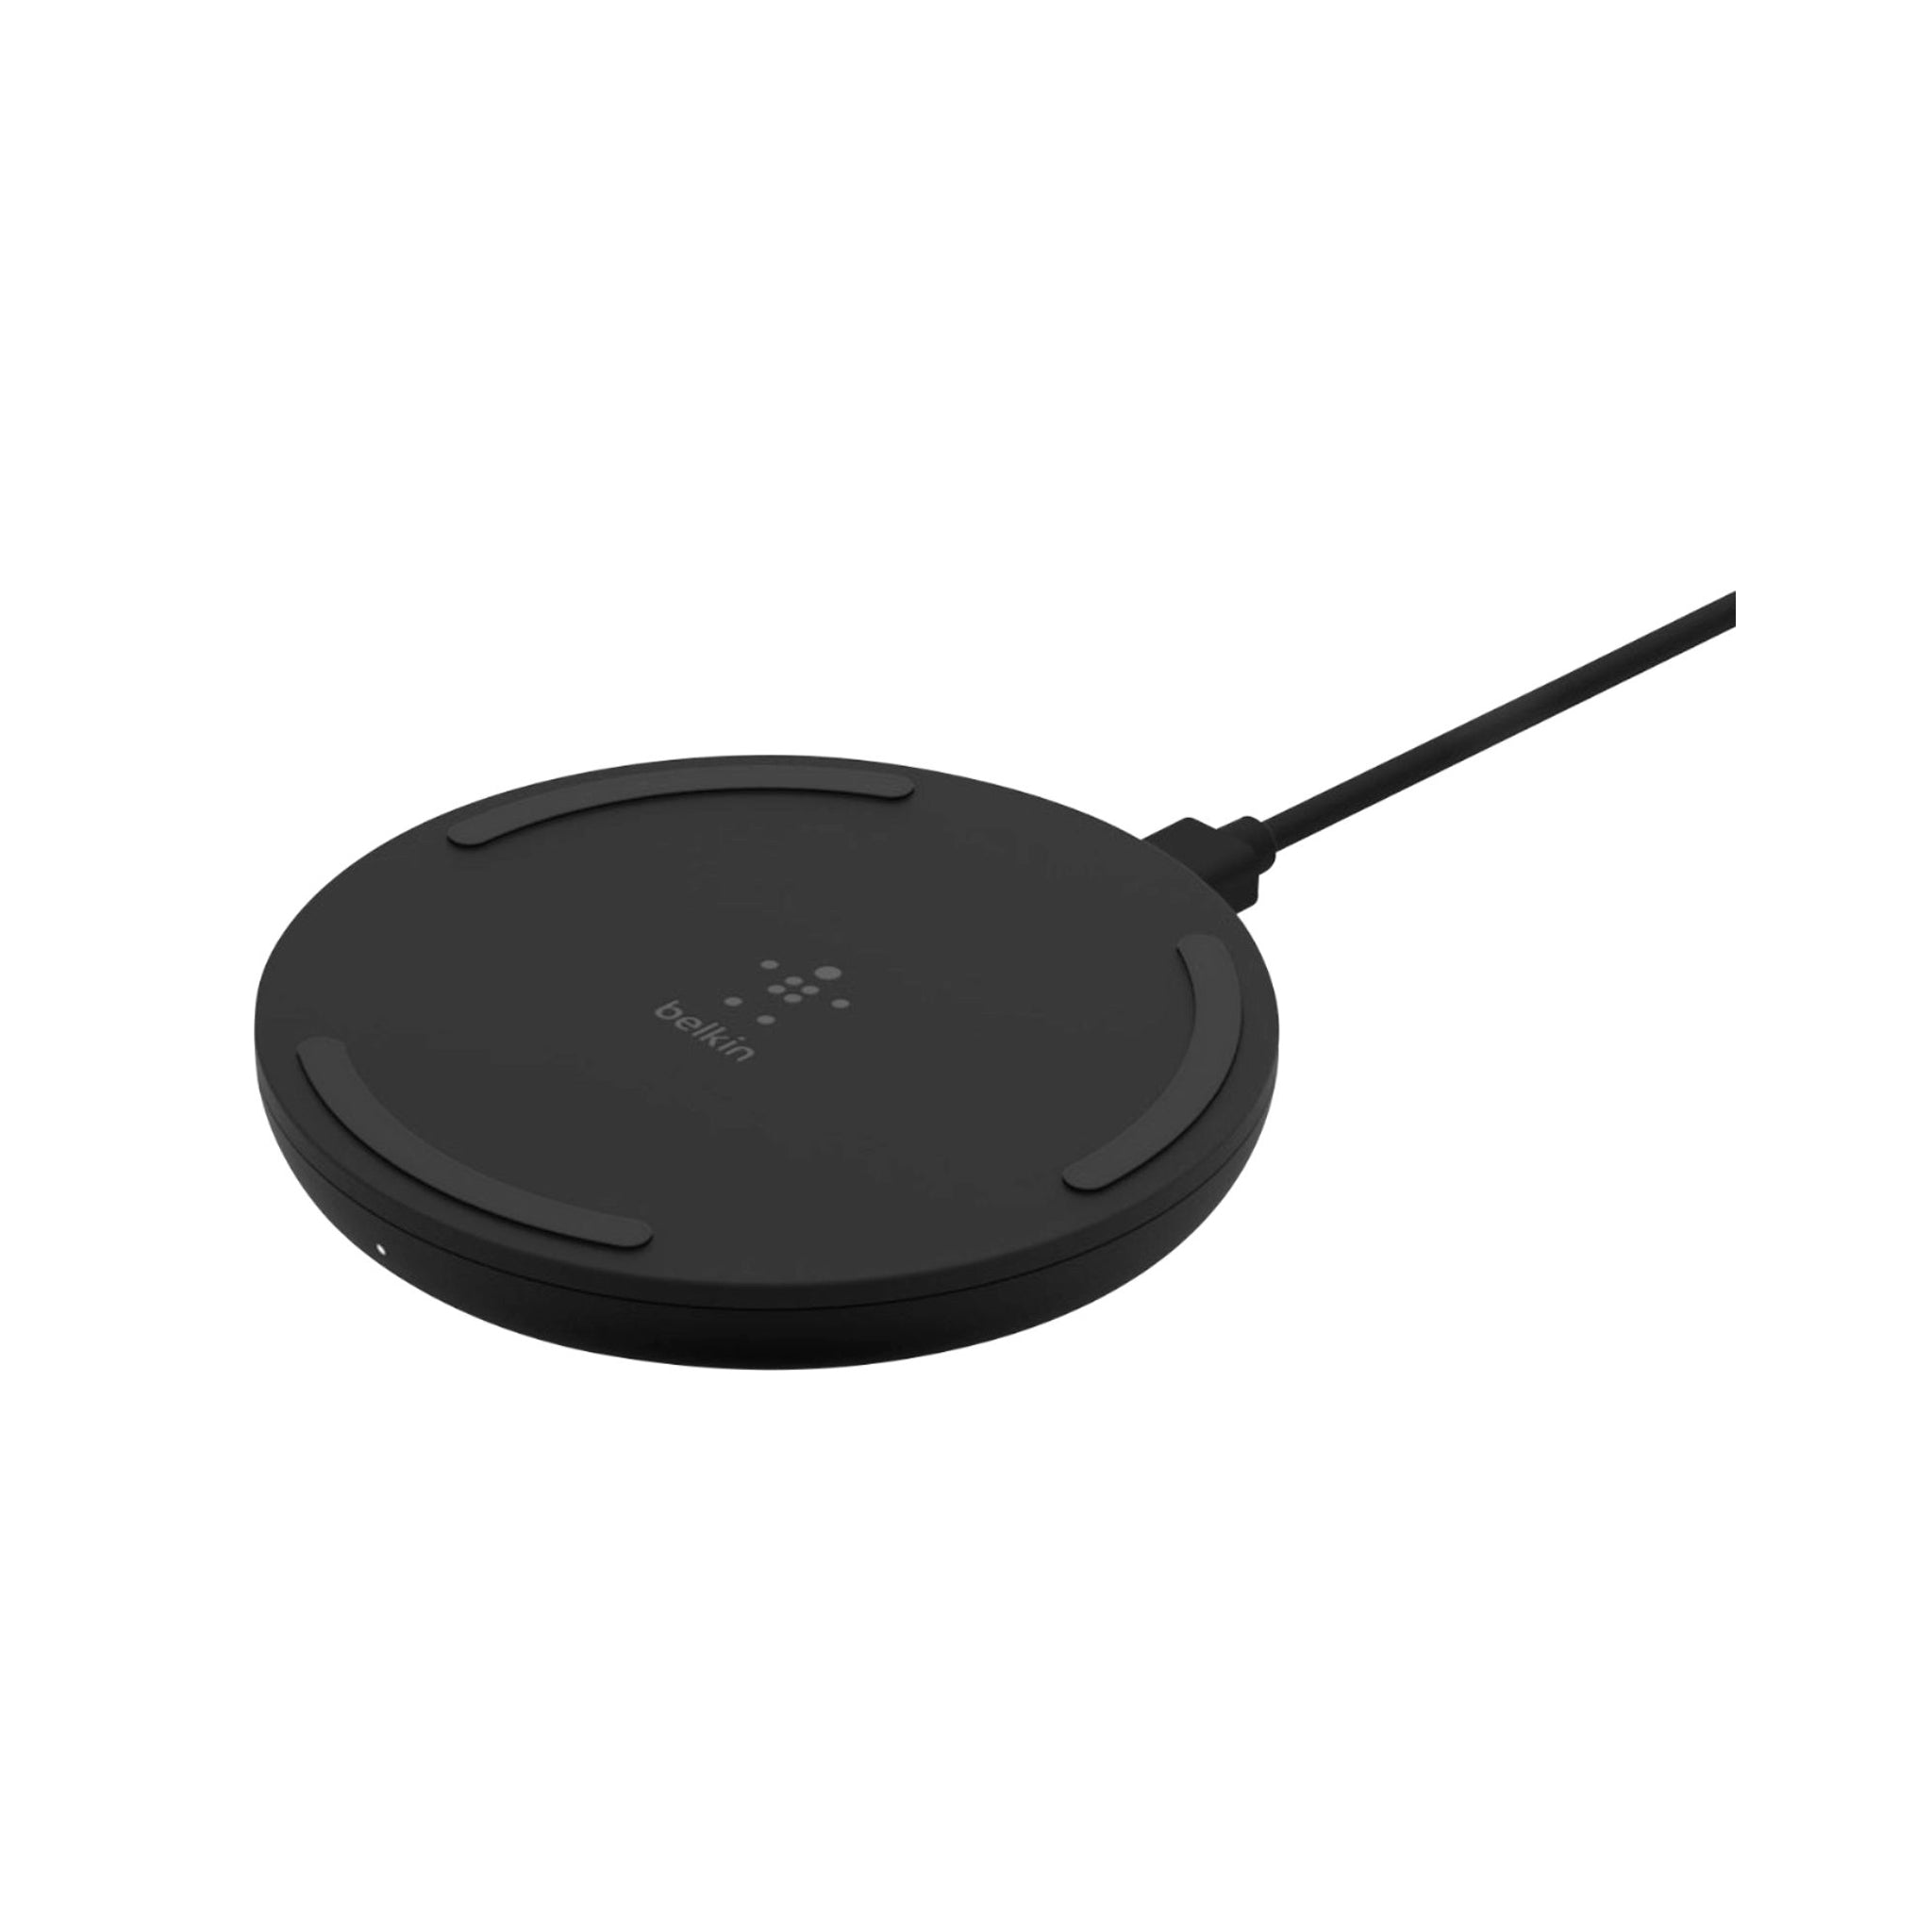 Belkin - Wireless Charging Pad 10w - Black